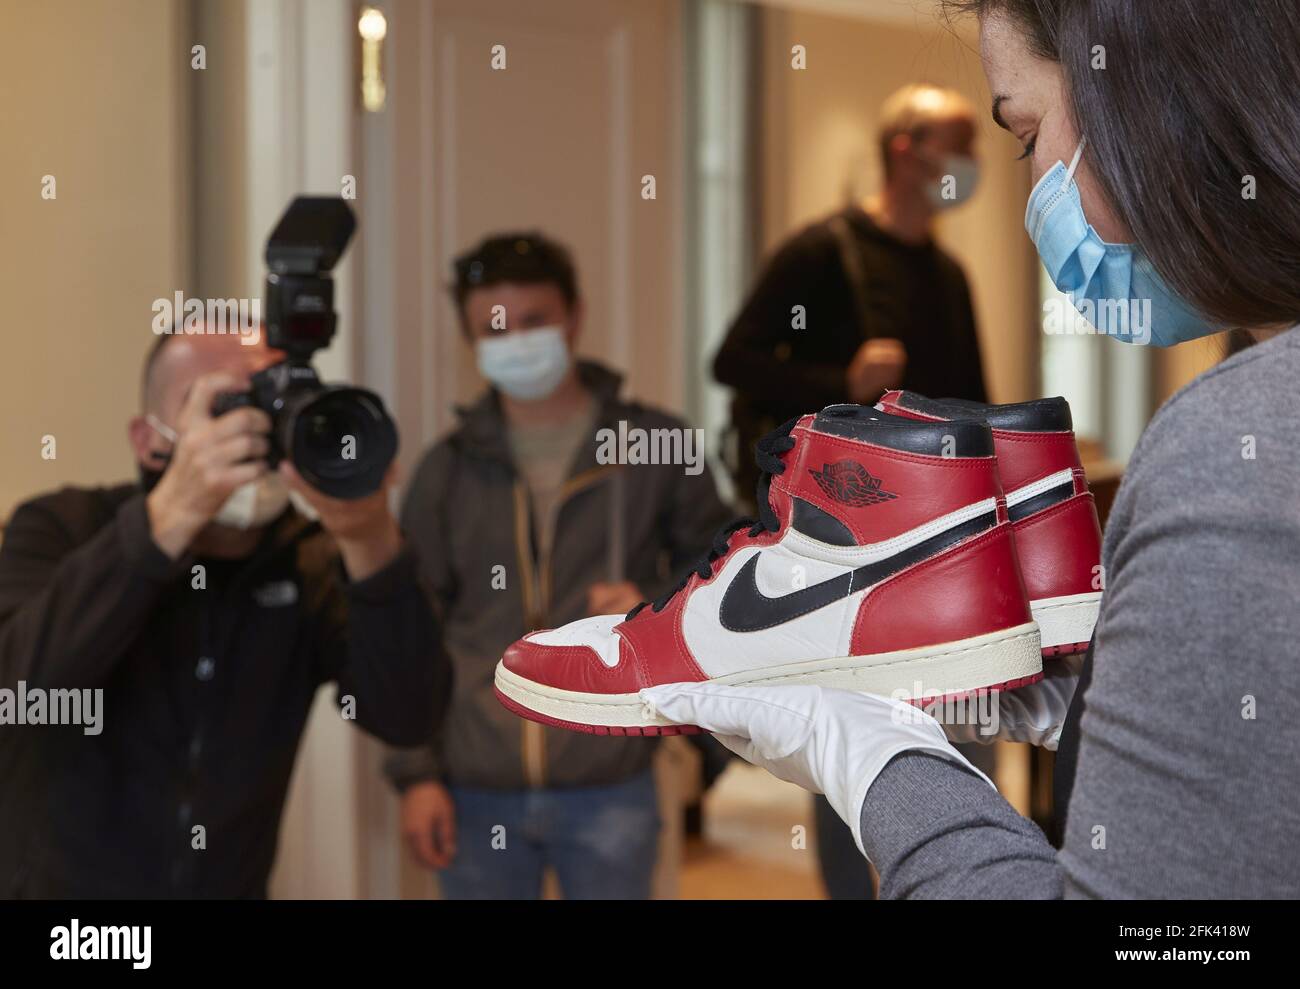 El personal de A Sotheby's tiene un par de zapatillas 'Air Jordan 1' usadas  por el campeón de la NBA Michael Jordan durante su temporada de novatos en  1984-85 en los Chicago